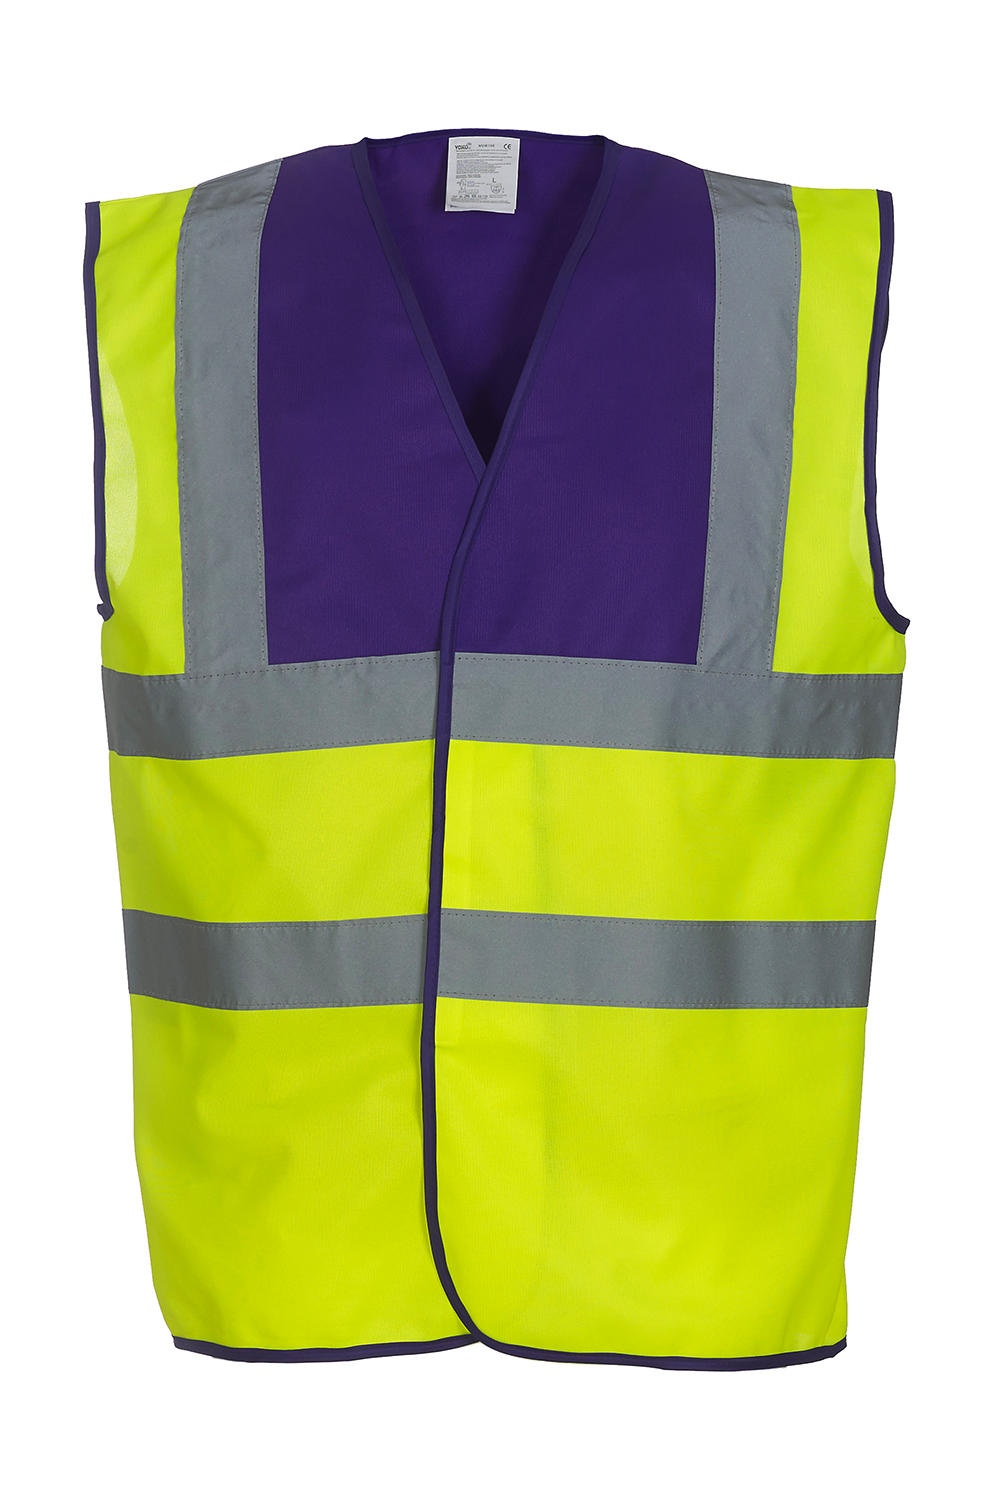  Fluo 2 Band + Brace Waistcoat in Farbe Fluo Yellow/Purple